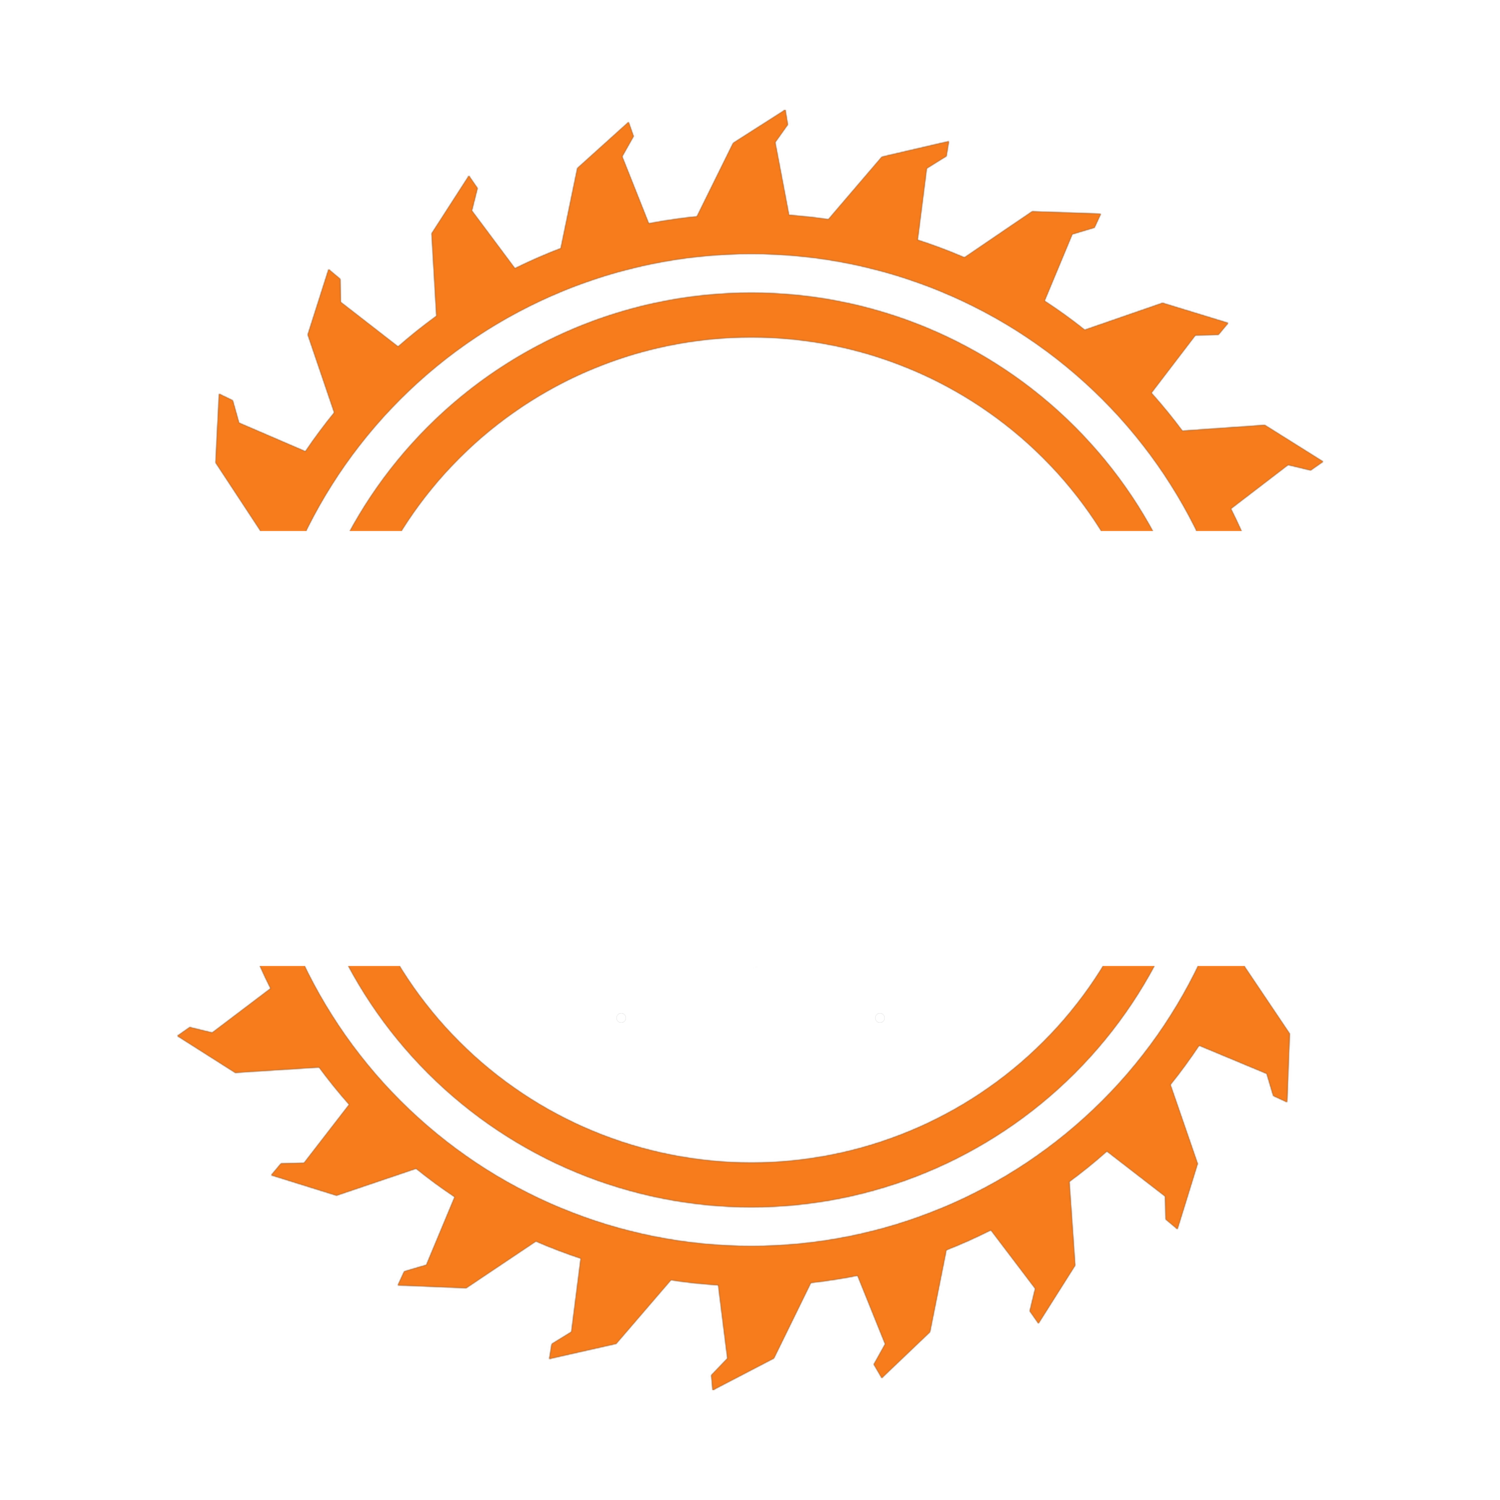 Heartland Lumber Company